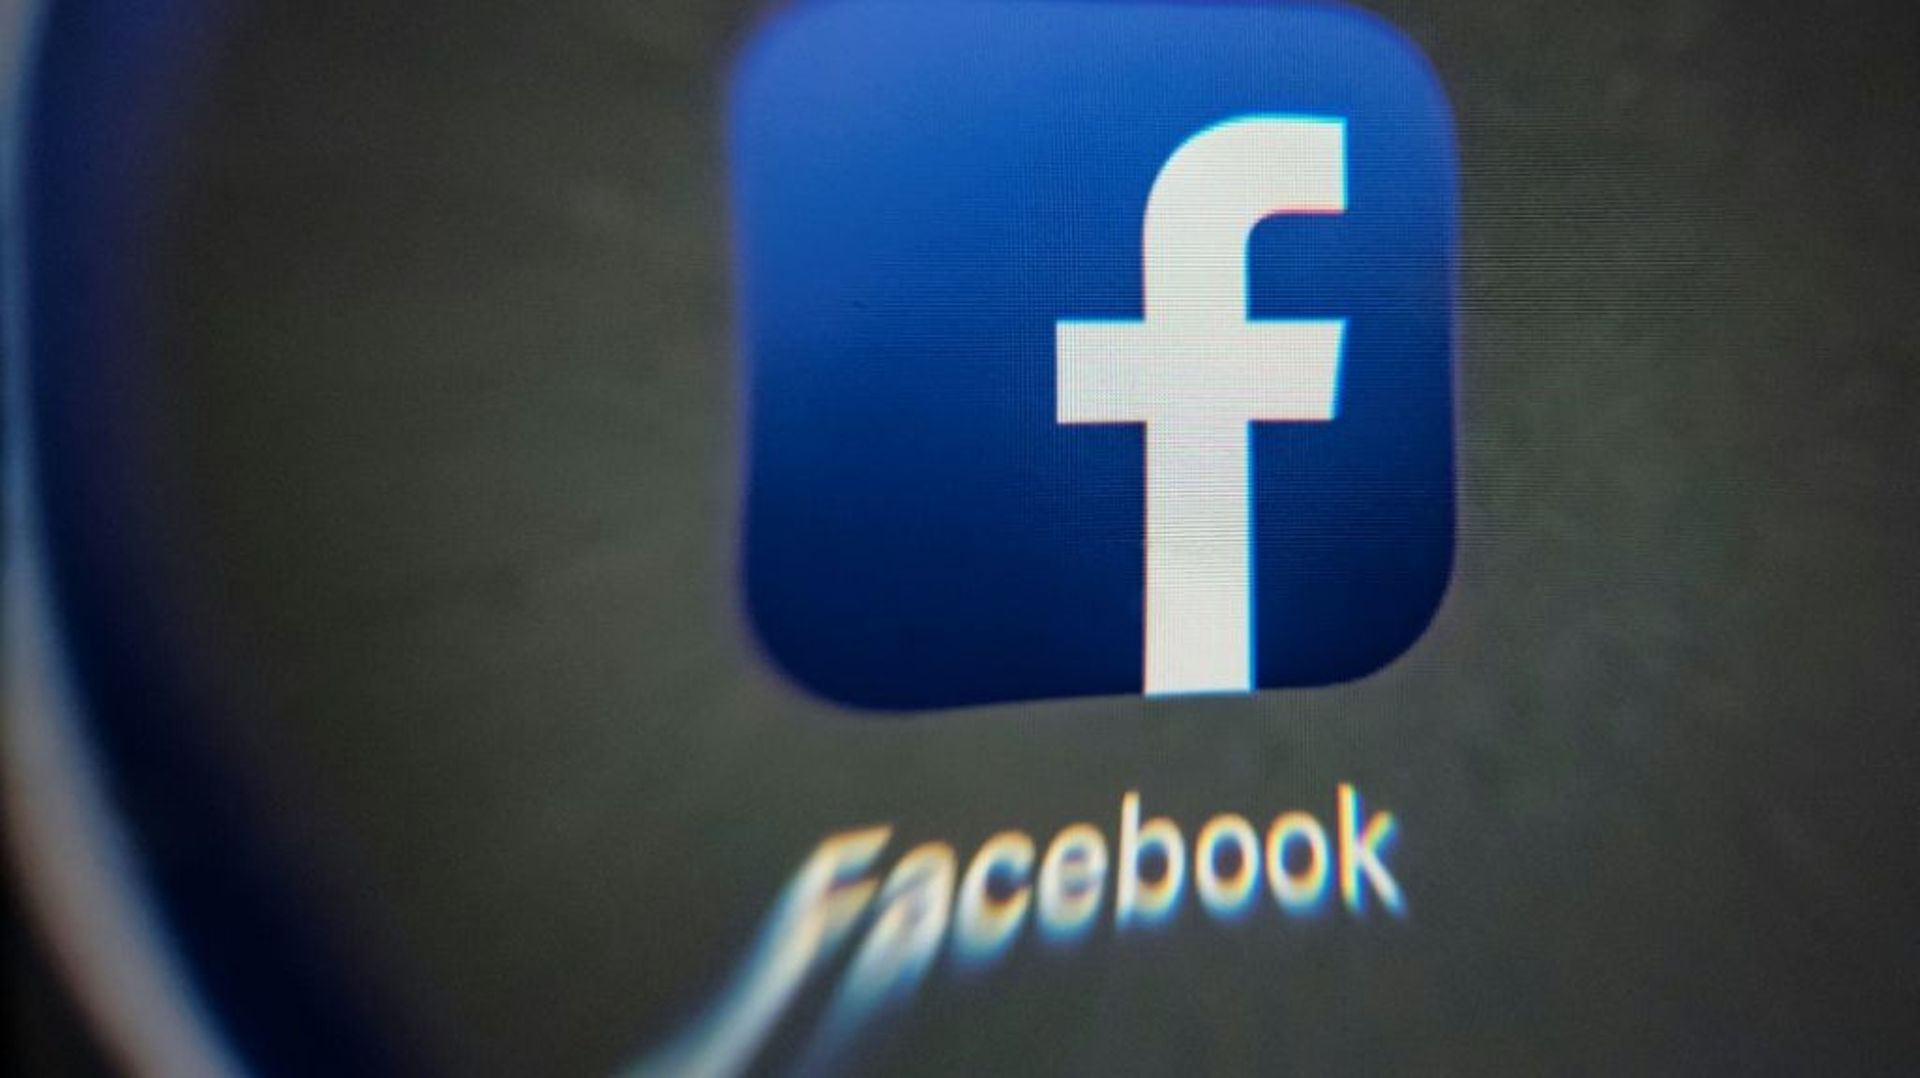 Facebook a décidé de limiter les possibilités de faire certaines recherches poussées sur la plateforme